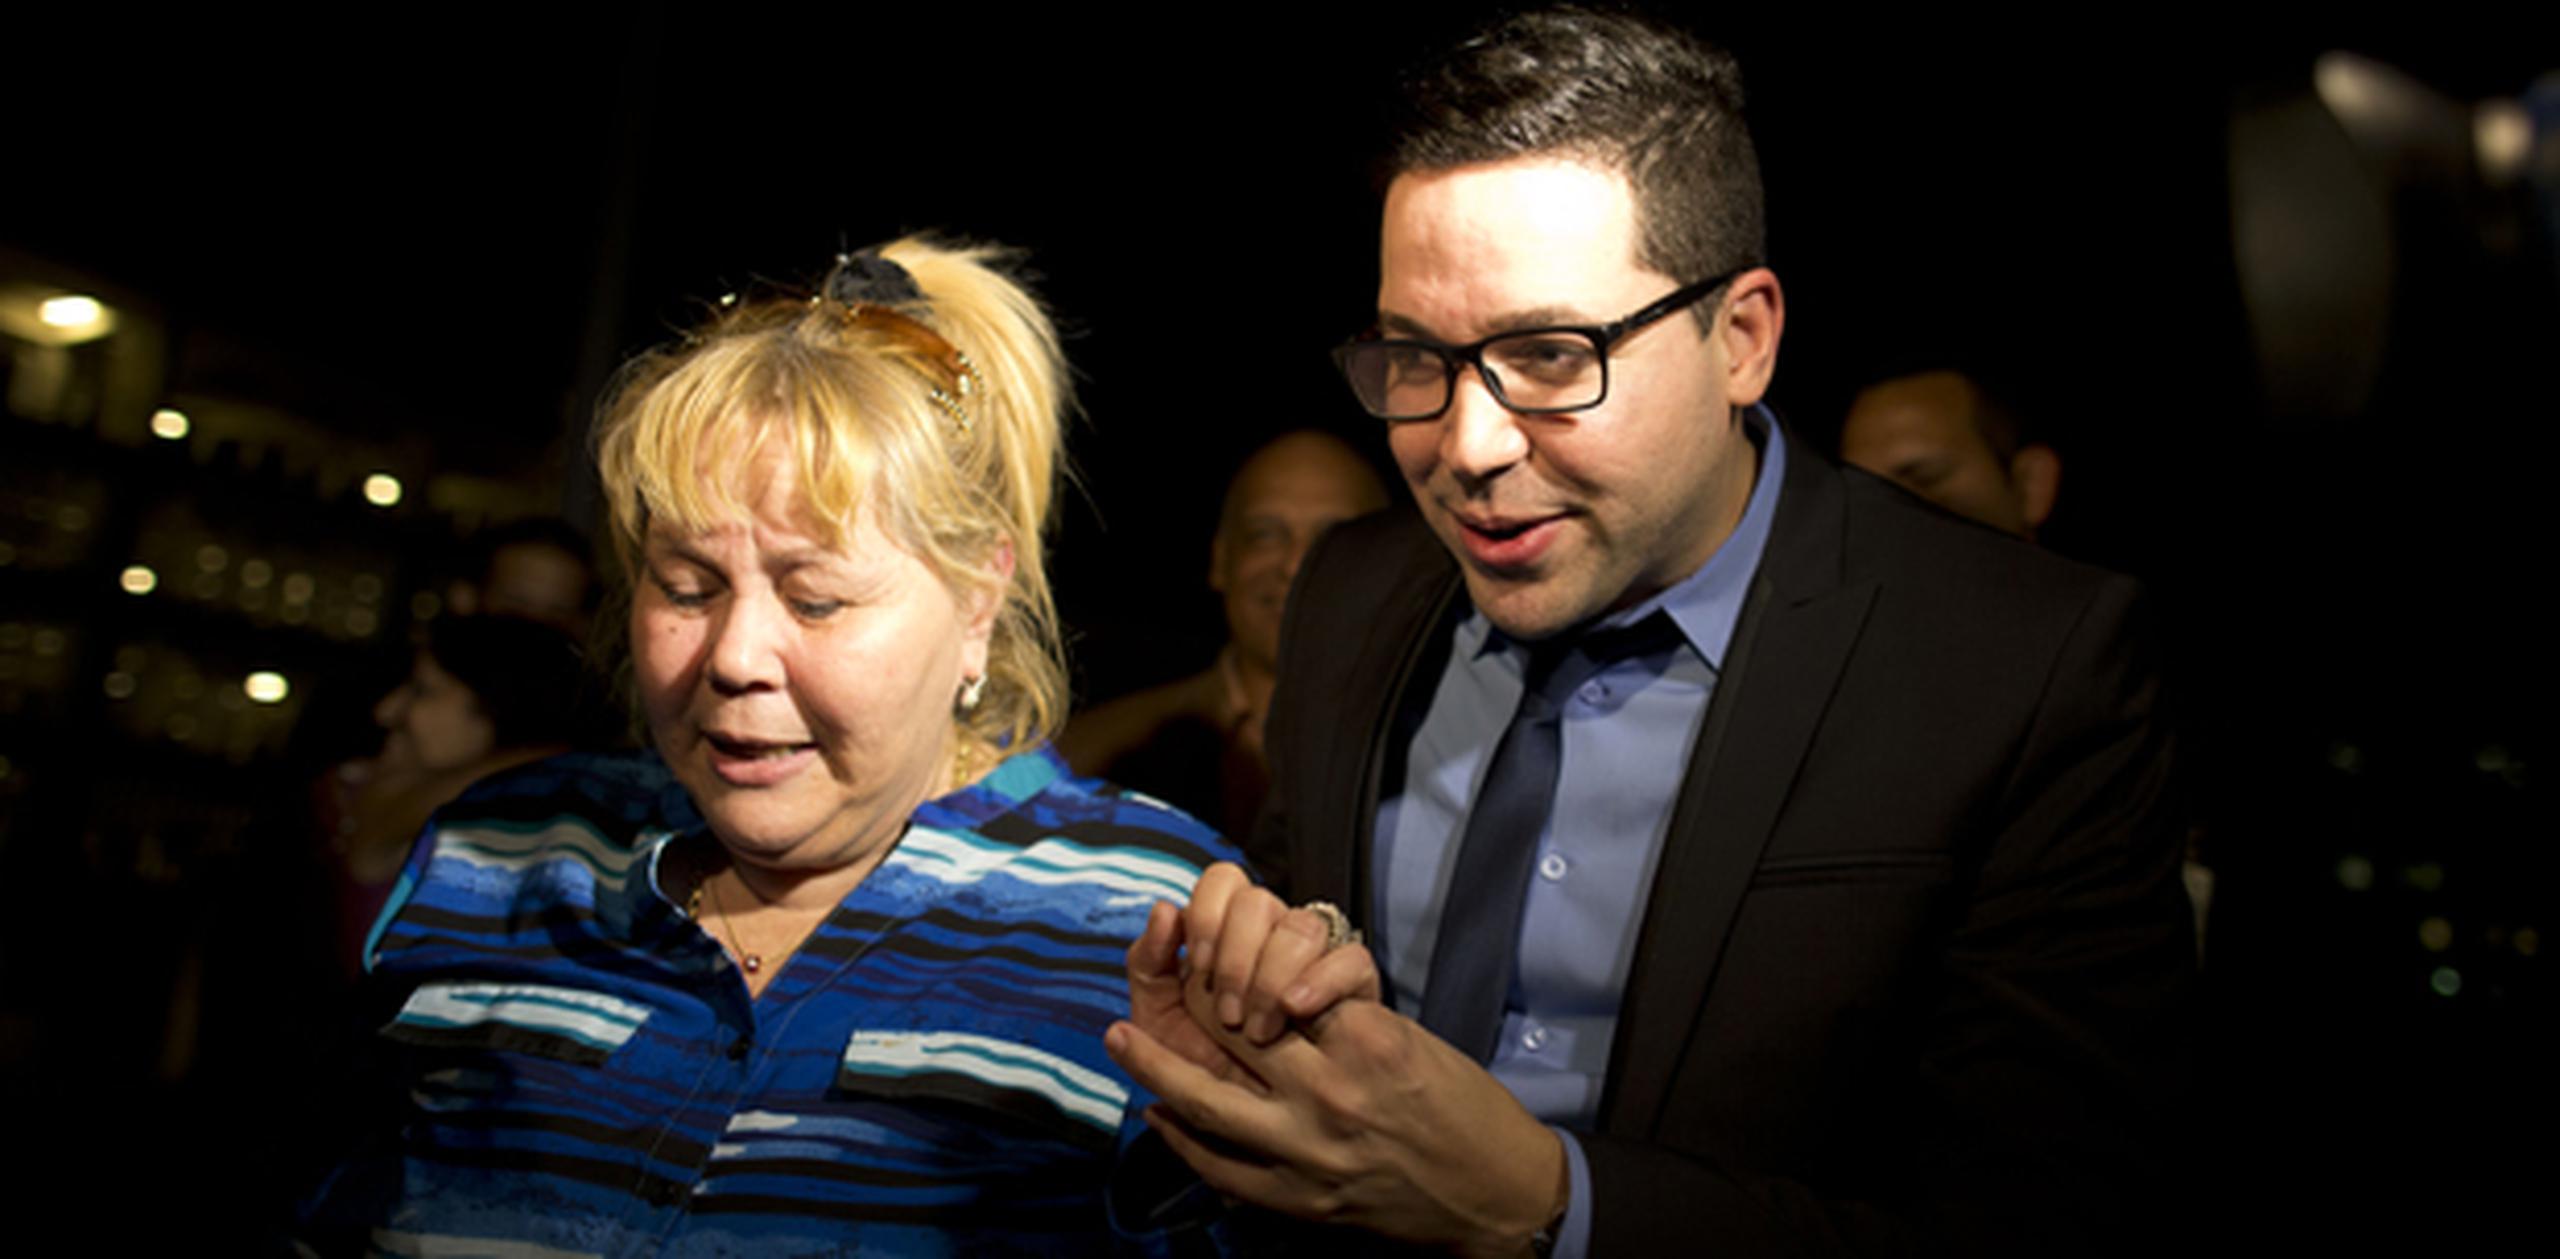 Carrión Carrero salió del tribunal acompañado por sus familiares, entre los que se encontraba su mamá, quien lloró al escuchar el veredicto de no culpabilidad. (tonito.zayas@gfrmedia.com)